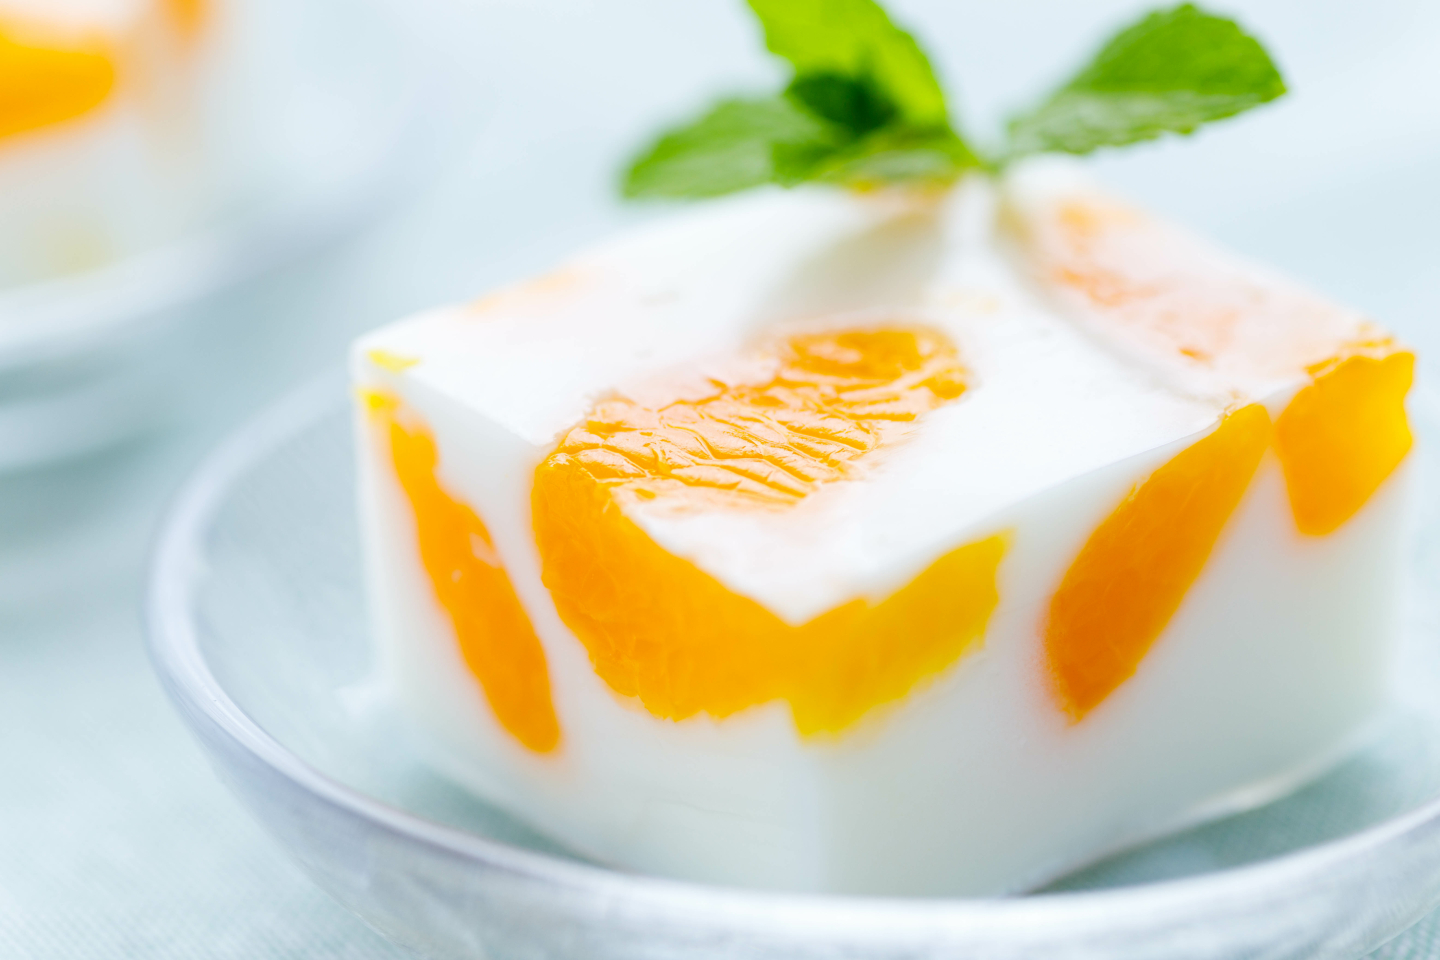 カルピス を使ったアレンジレシピ 夏にピッタリのさわやかアレンジが目白押し Kufura クフラ 小学館公式